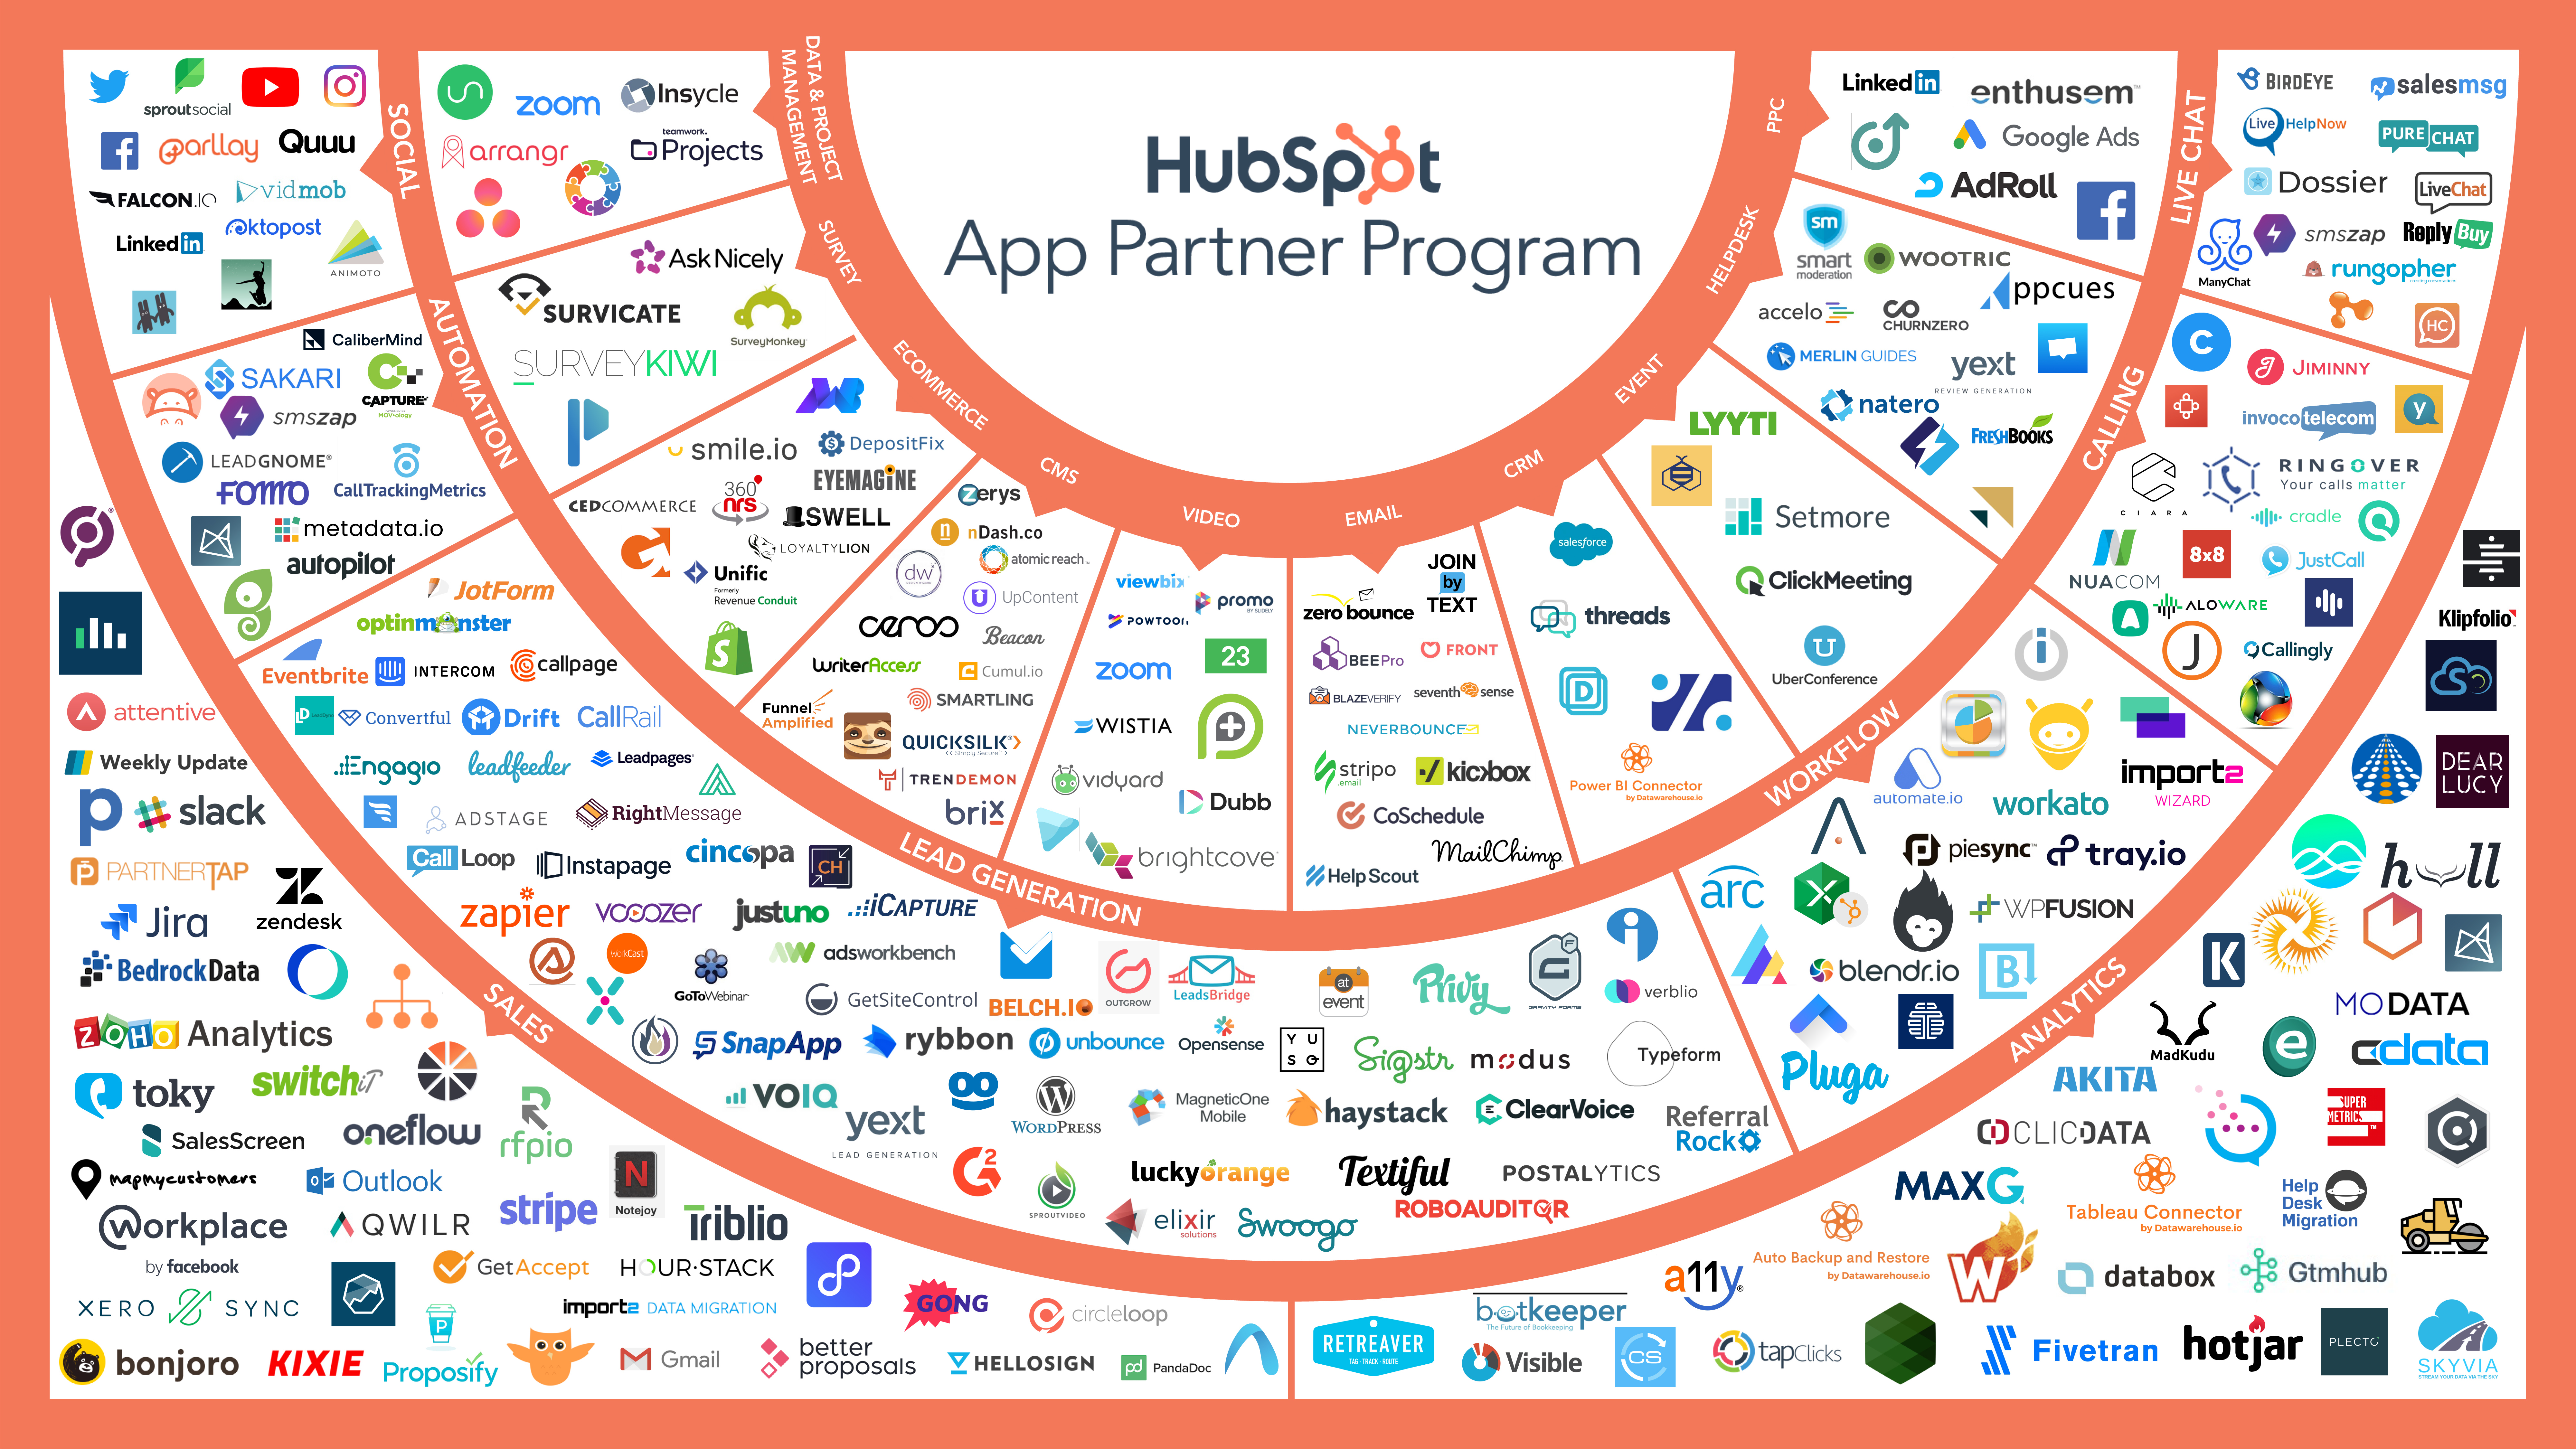 O HubSpot ofereceintegração prática com mais de 200 plataformas